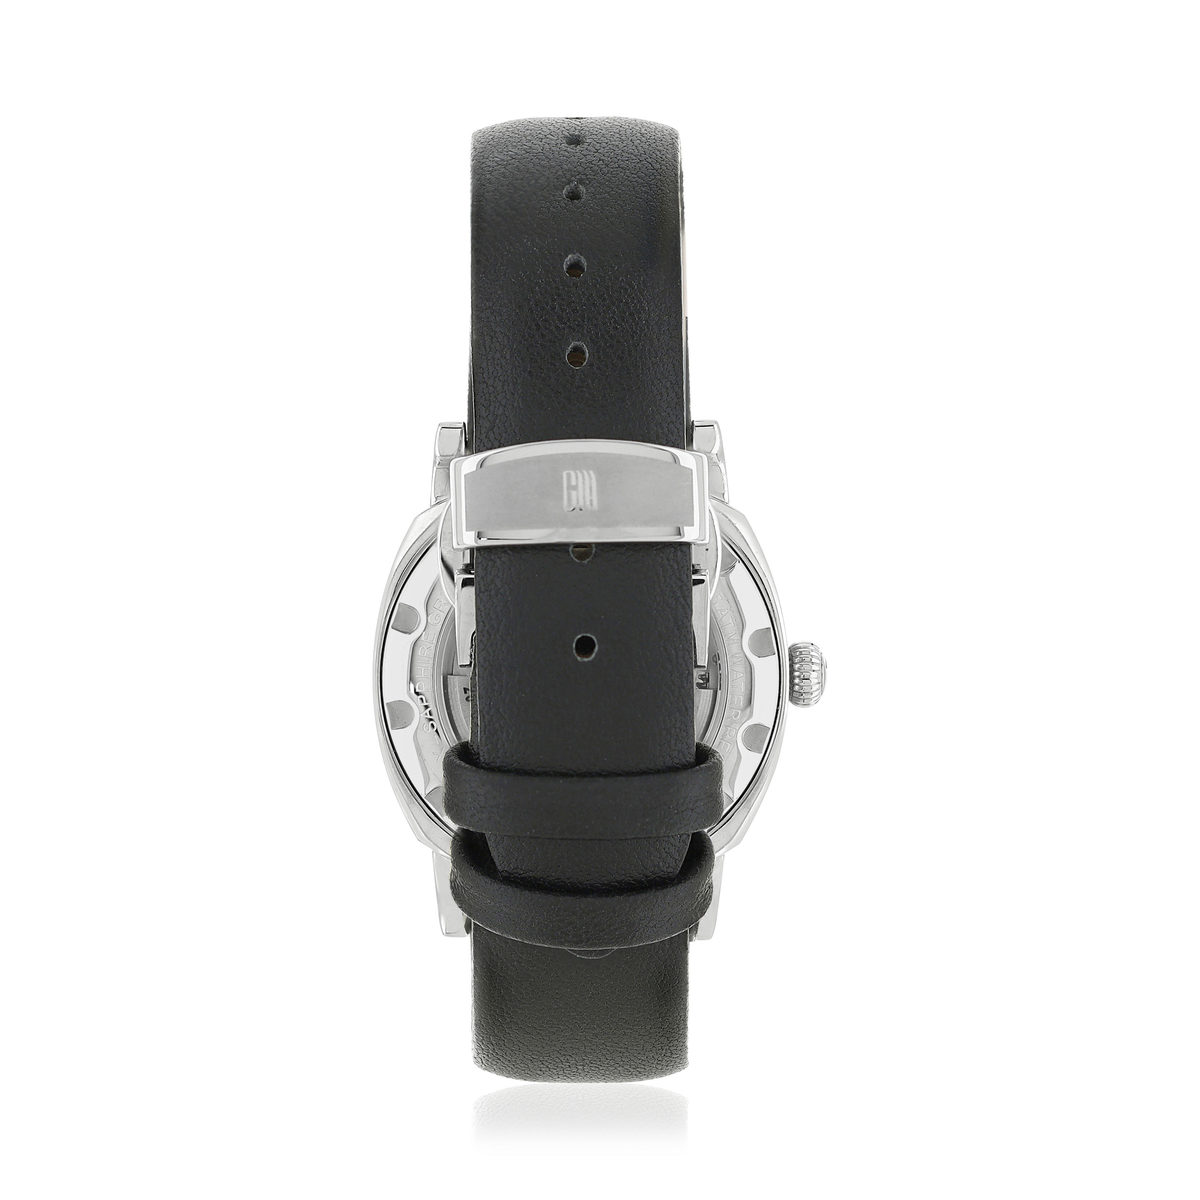 Montre MATY GM automatique cadran noir bracelet cuir noir - vue 3